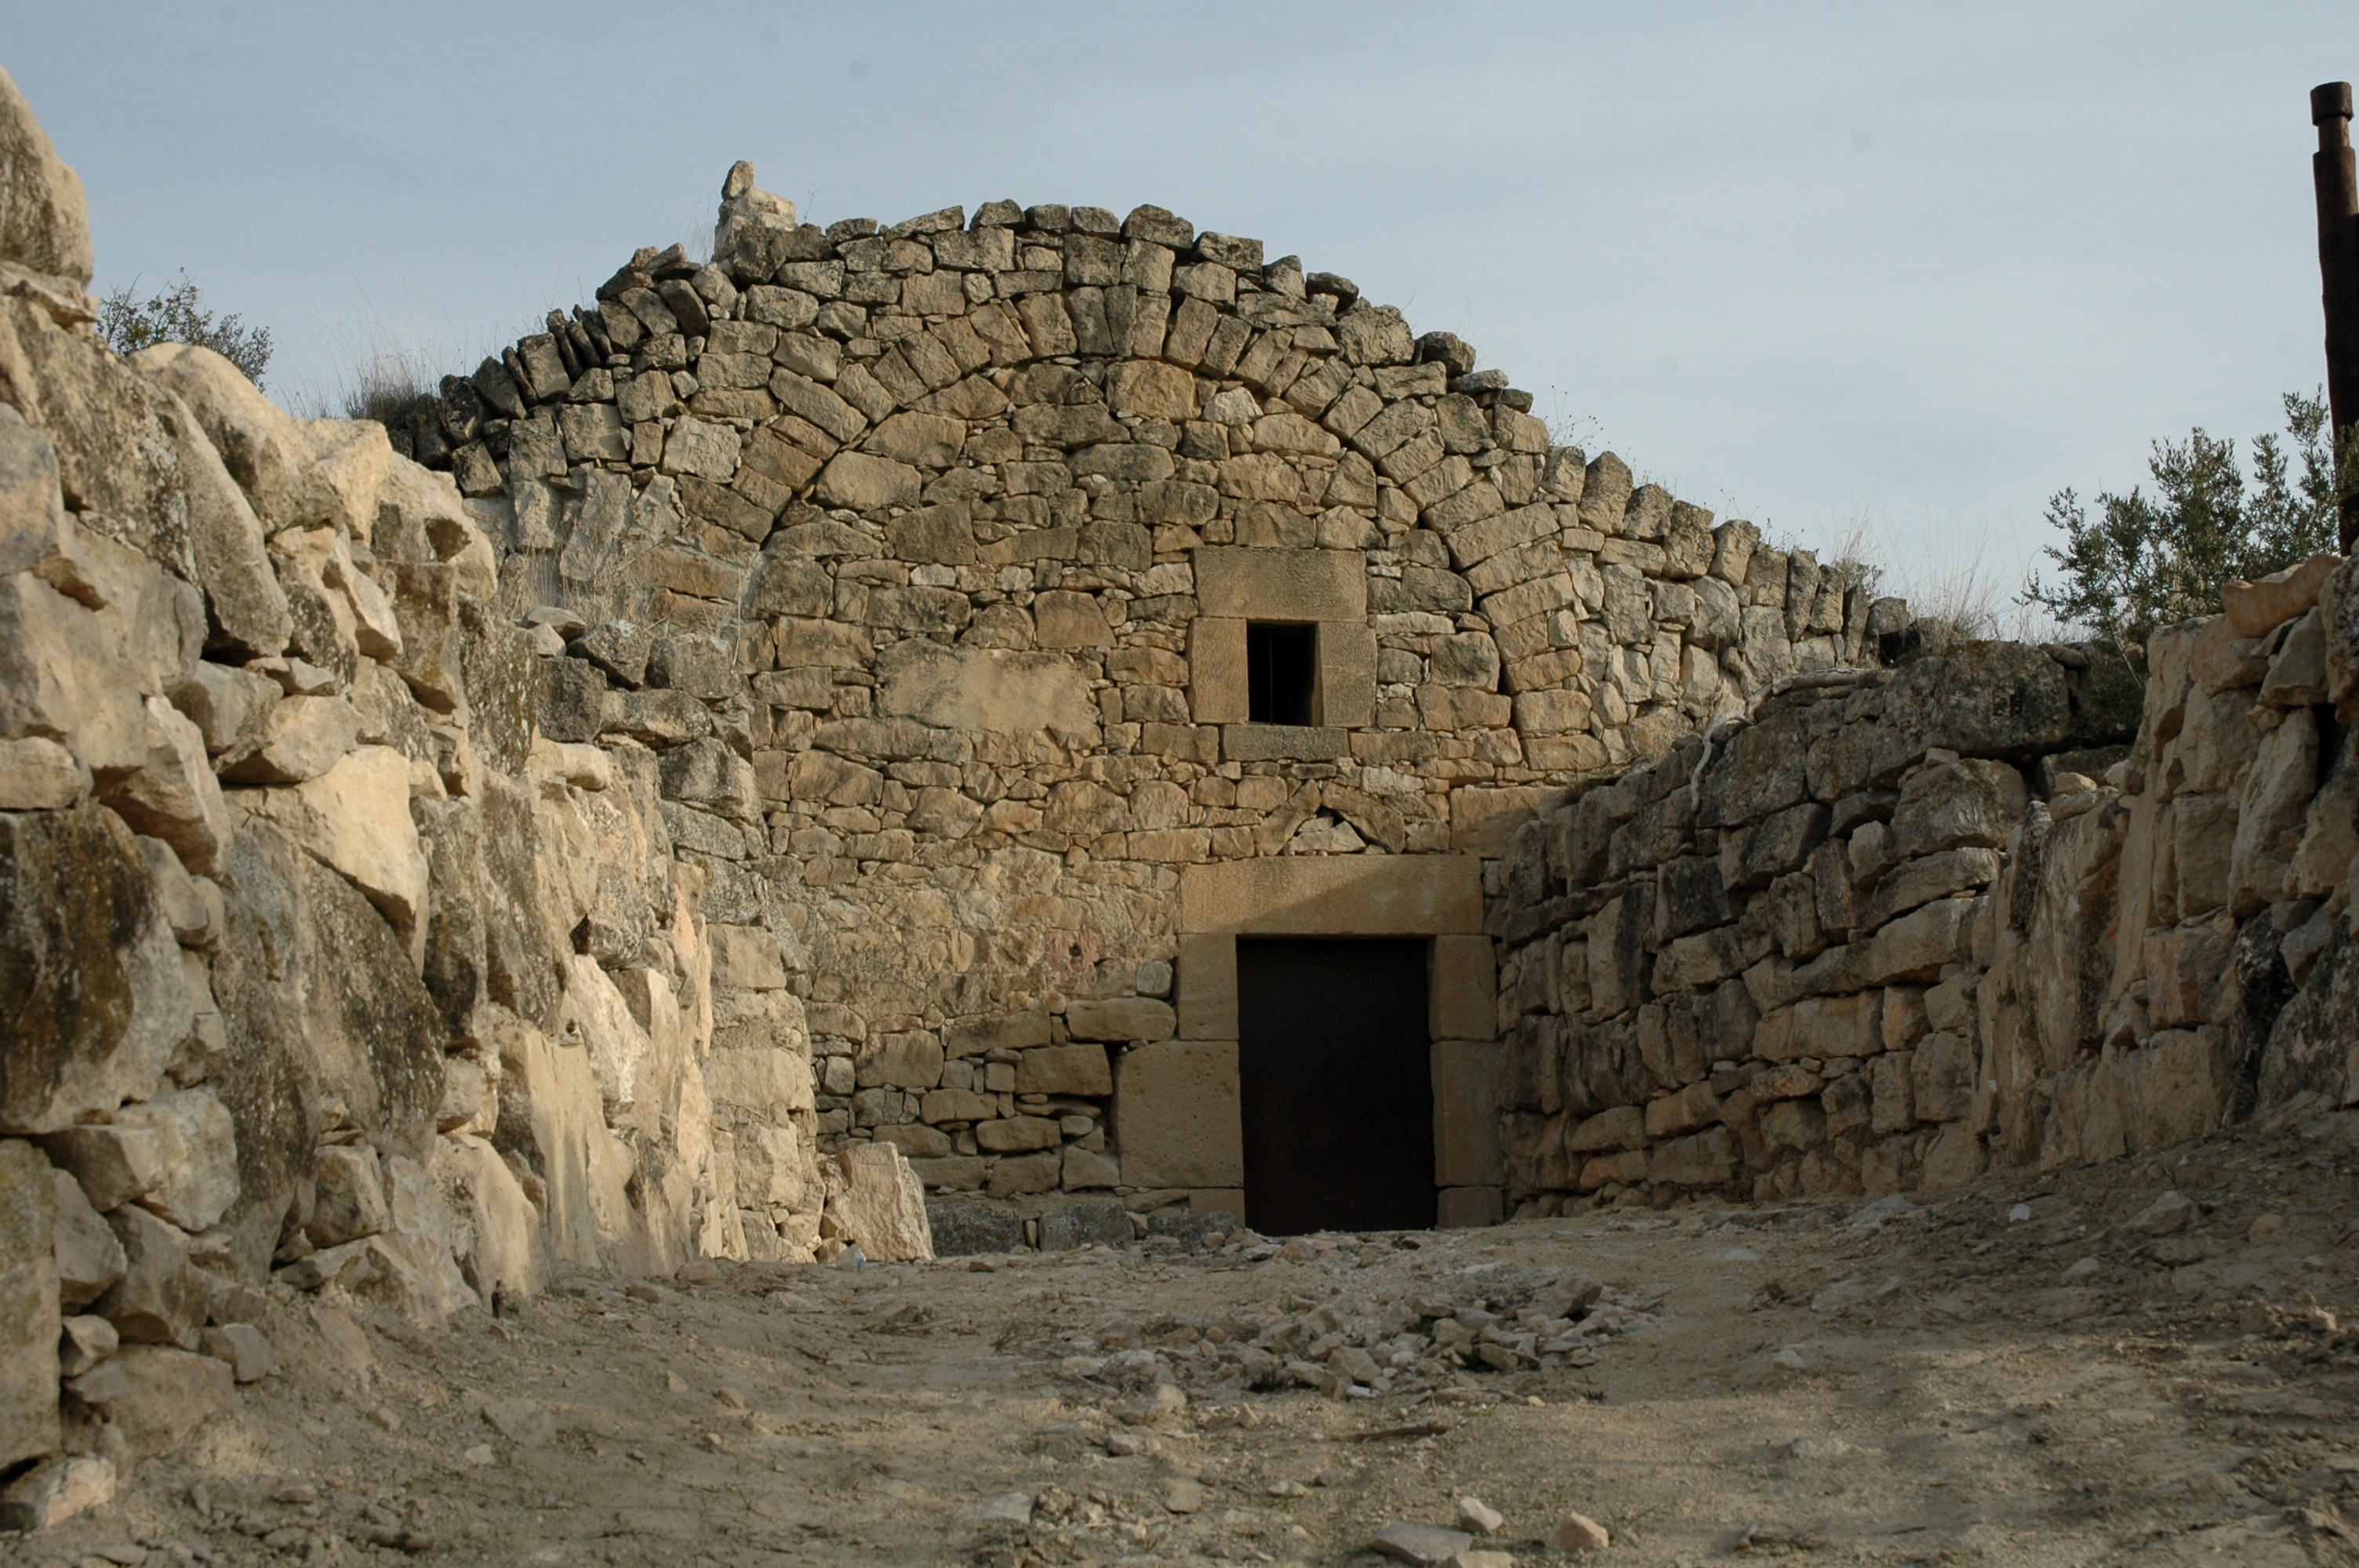 Un exemple de cabana de volta feta amb pedra seca a les Borges Blanques, a la comarca de les Garrigues. APSAT